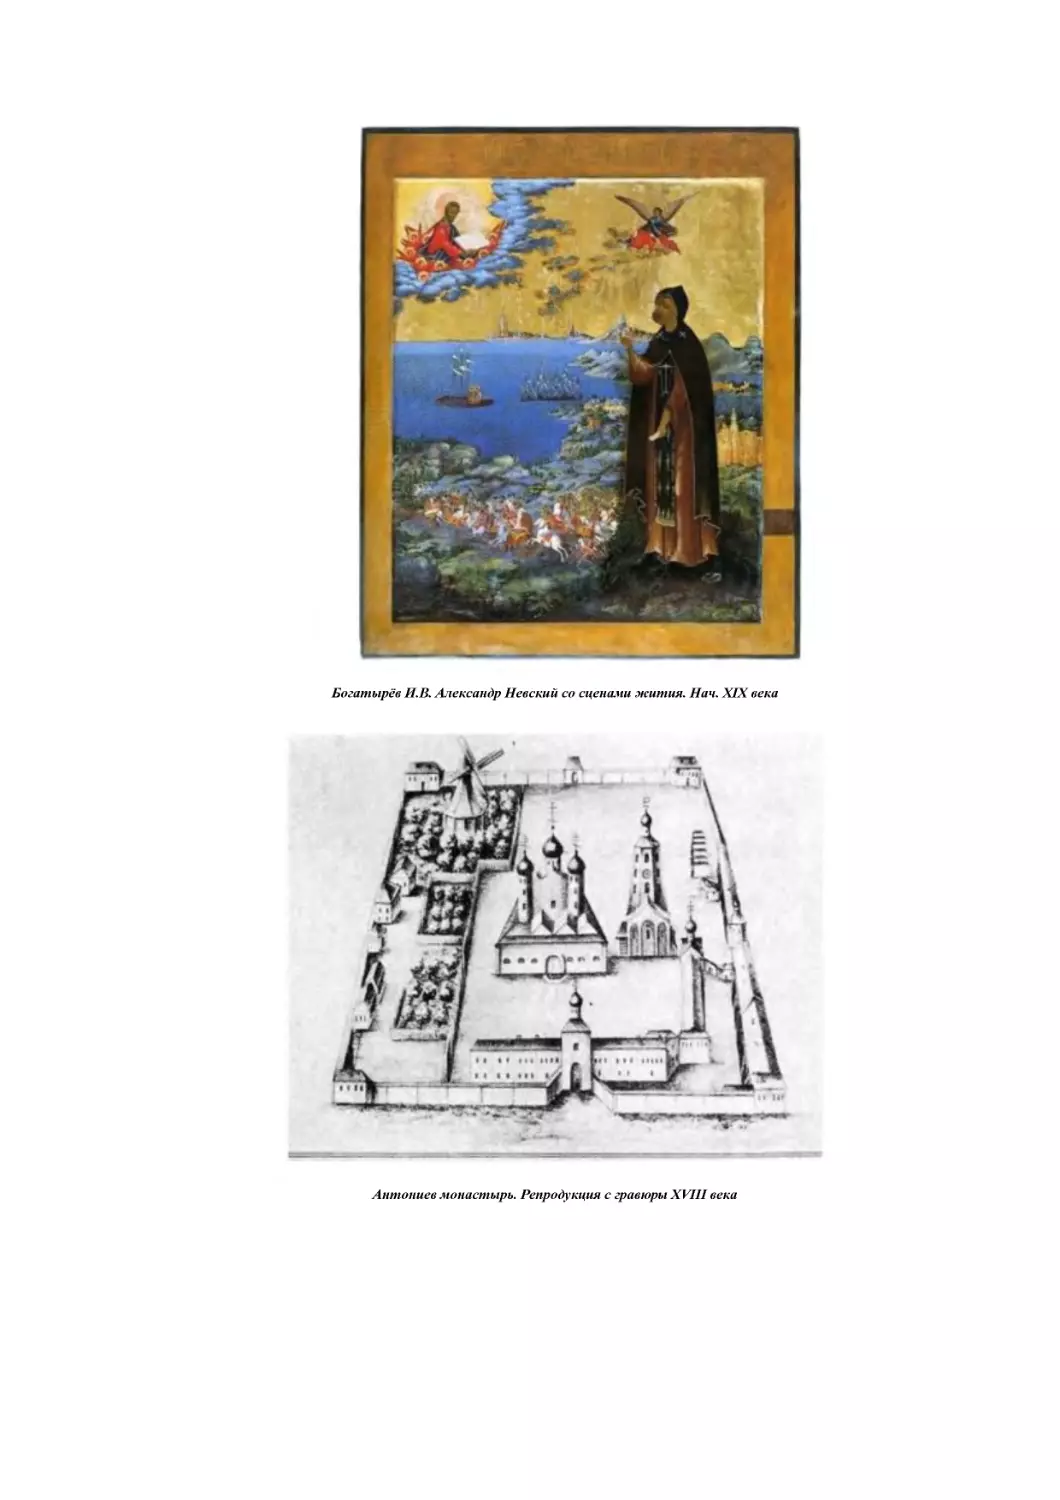 ﻿Антониев монастырь. Репродукция с гравюры XVIII век